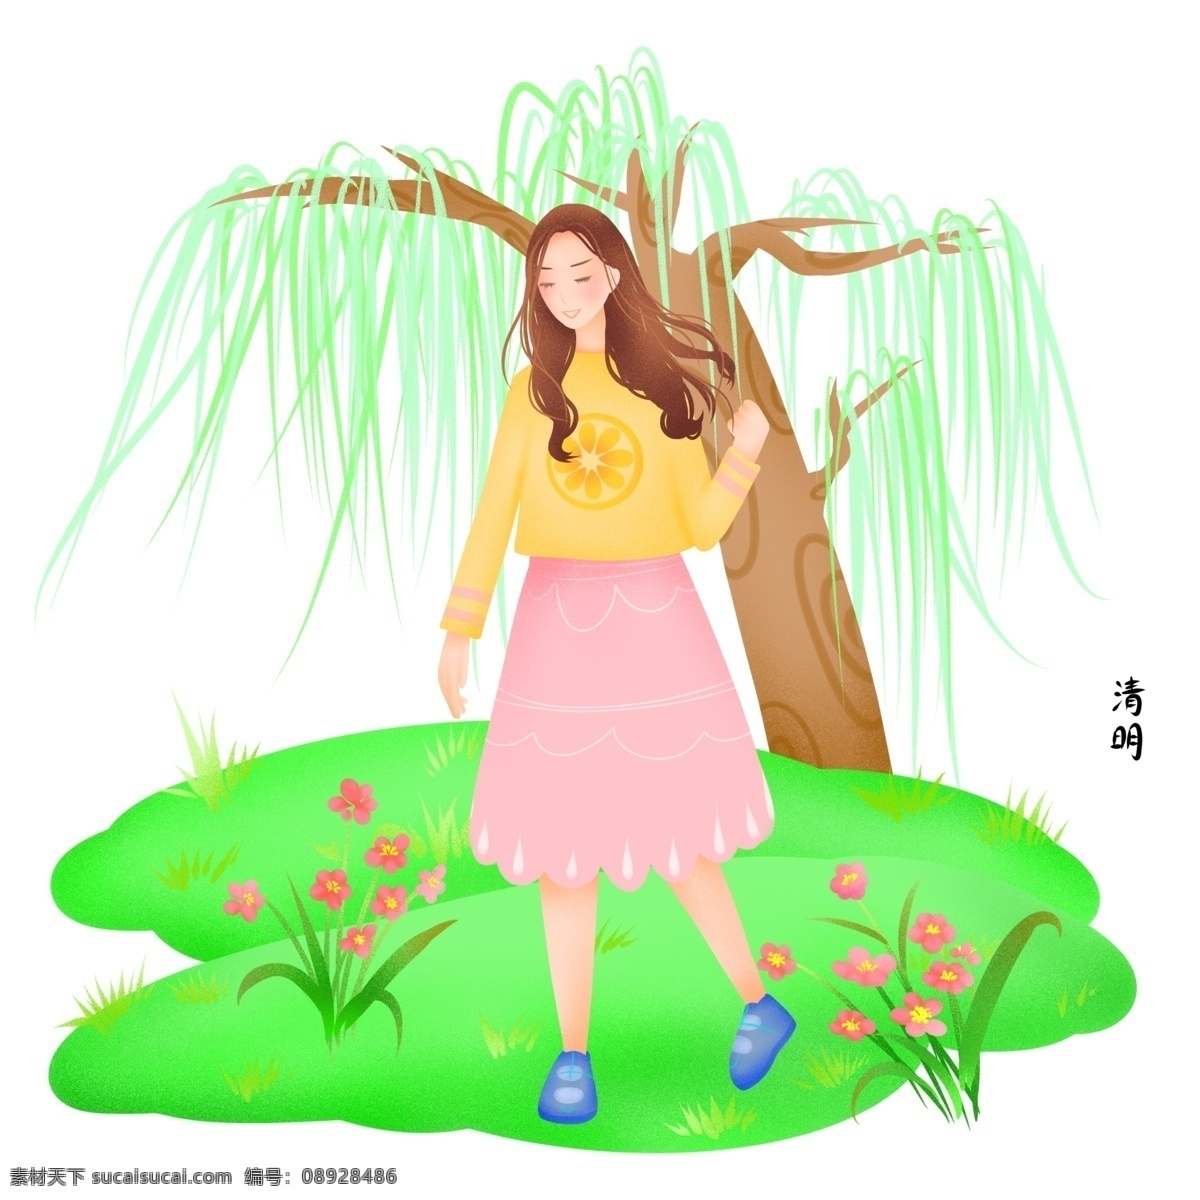 清明 柳树下 女孩 插画 清明人物插画 柳树下的女孩 卡通人物 植物花草 绿色草坪 长头 发 漂亮